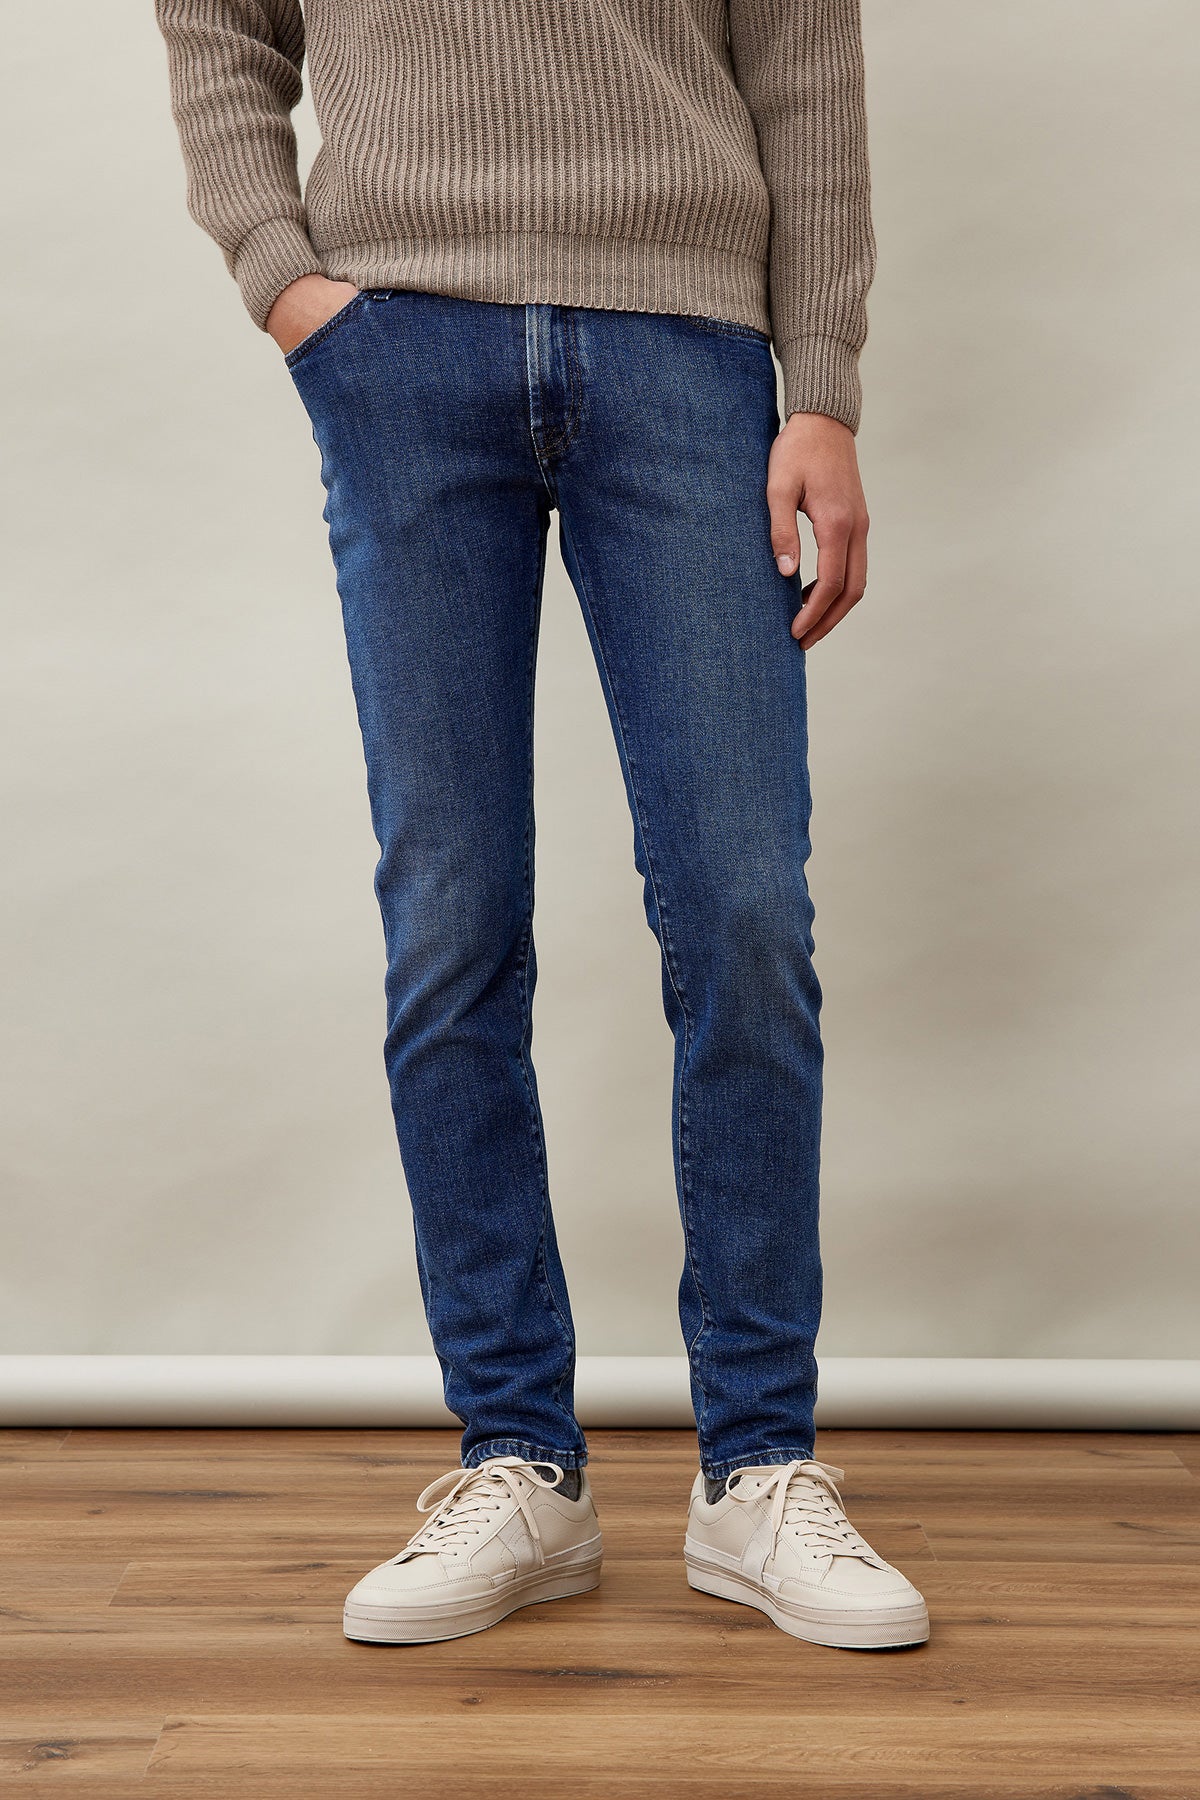 Jeans Roy Roger's Pueblo / Jeans - Ideal Moda